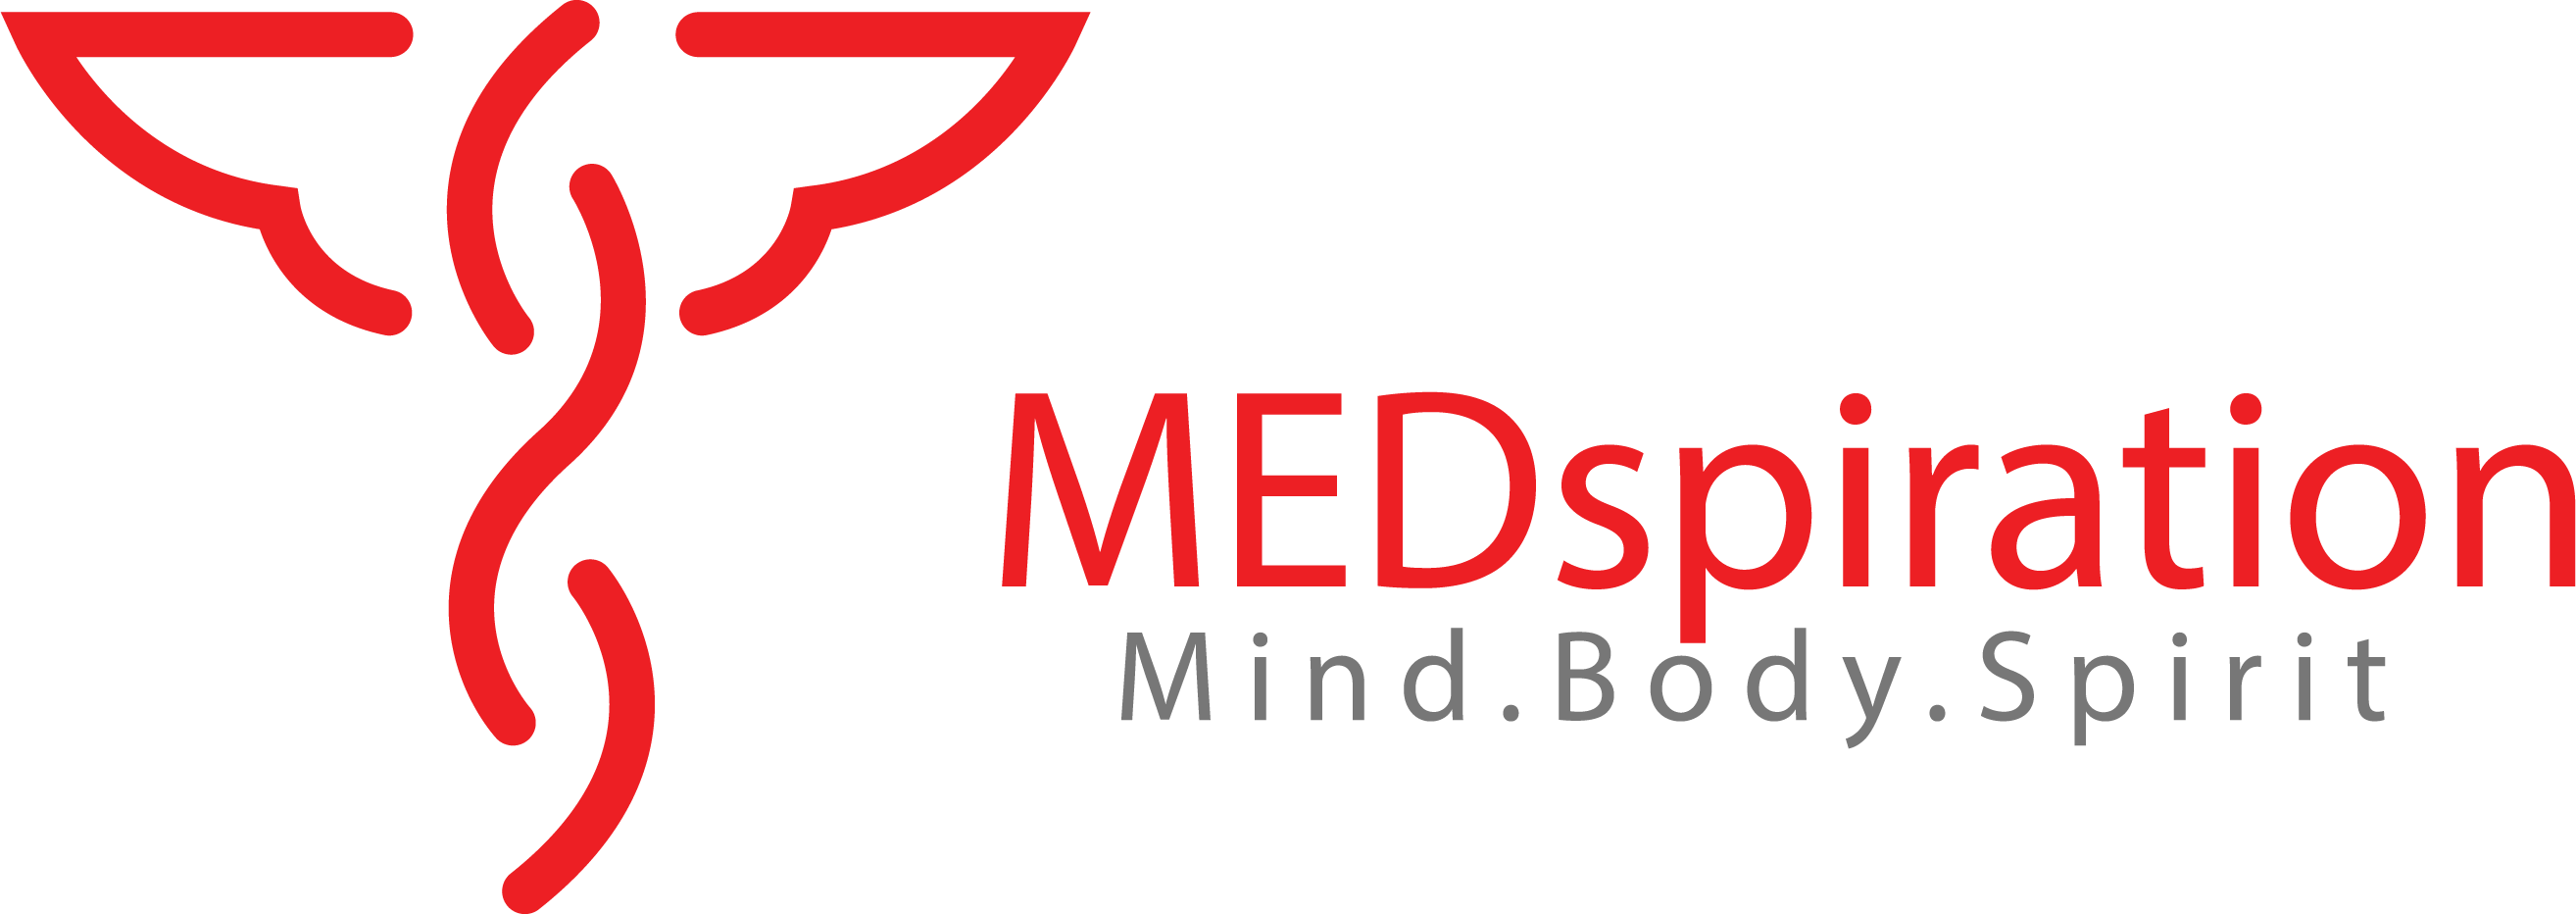 MEDspiration logo